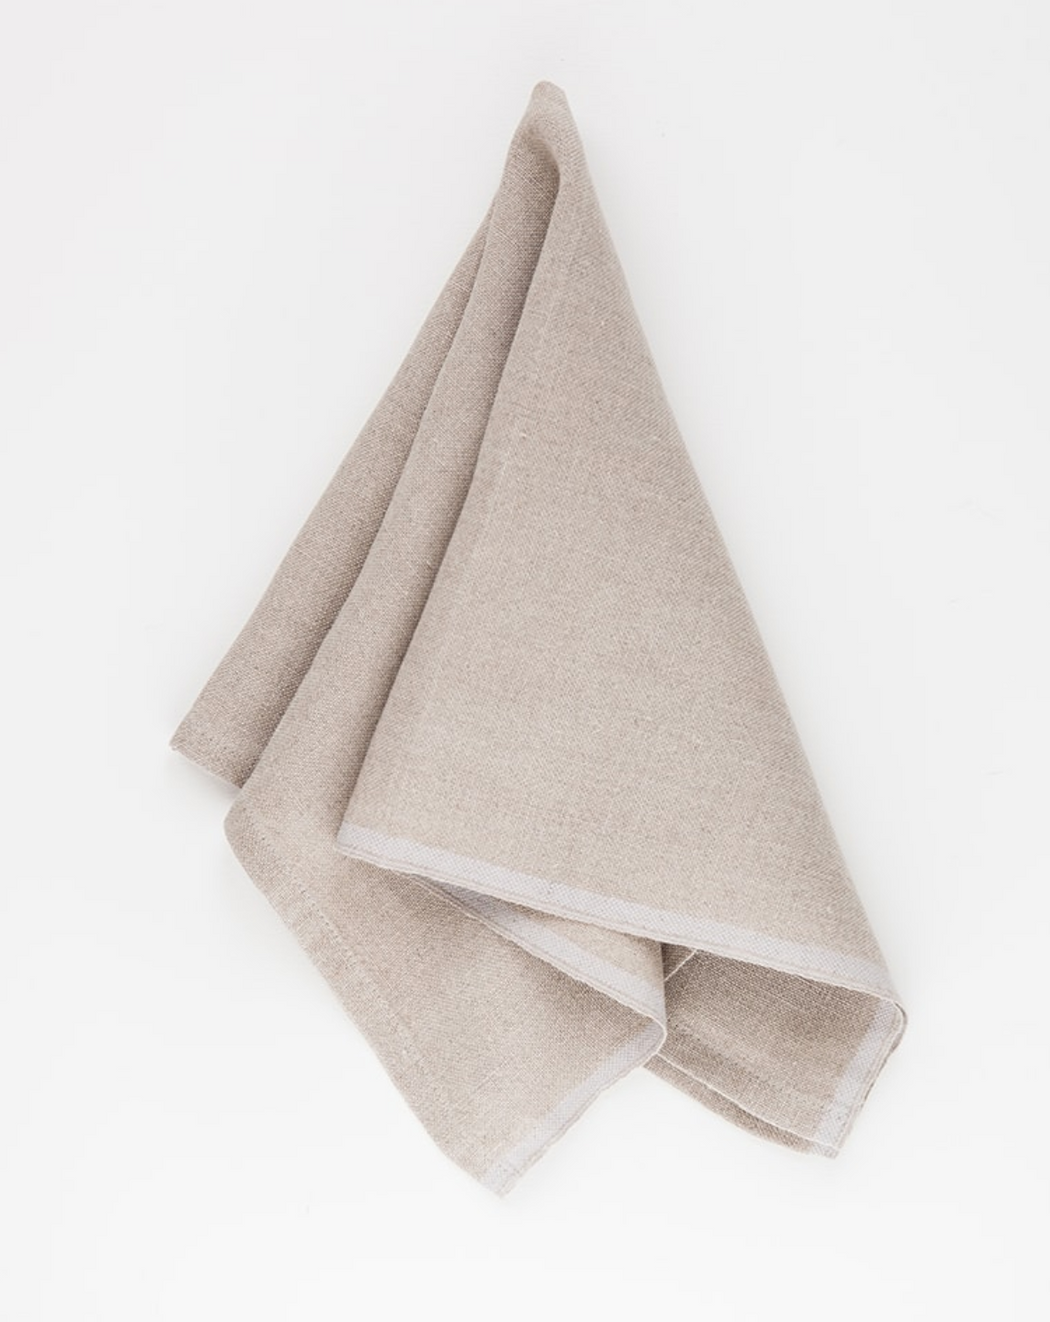 Mungo :: Colored Edge Linen Napkin, White